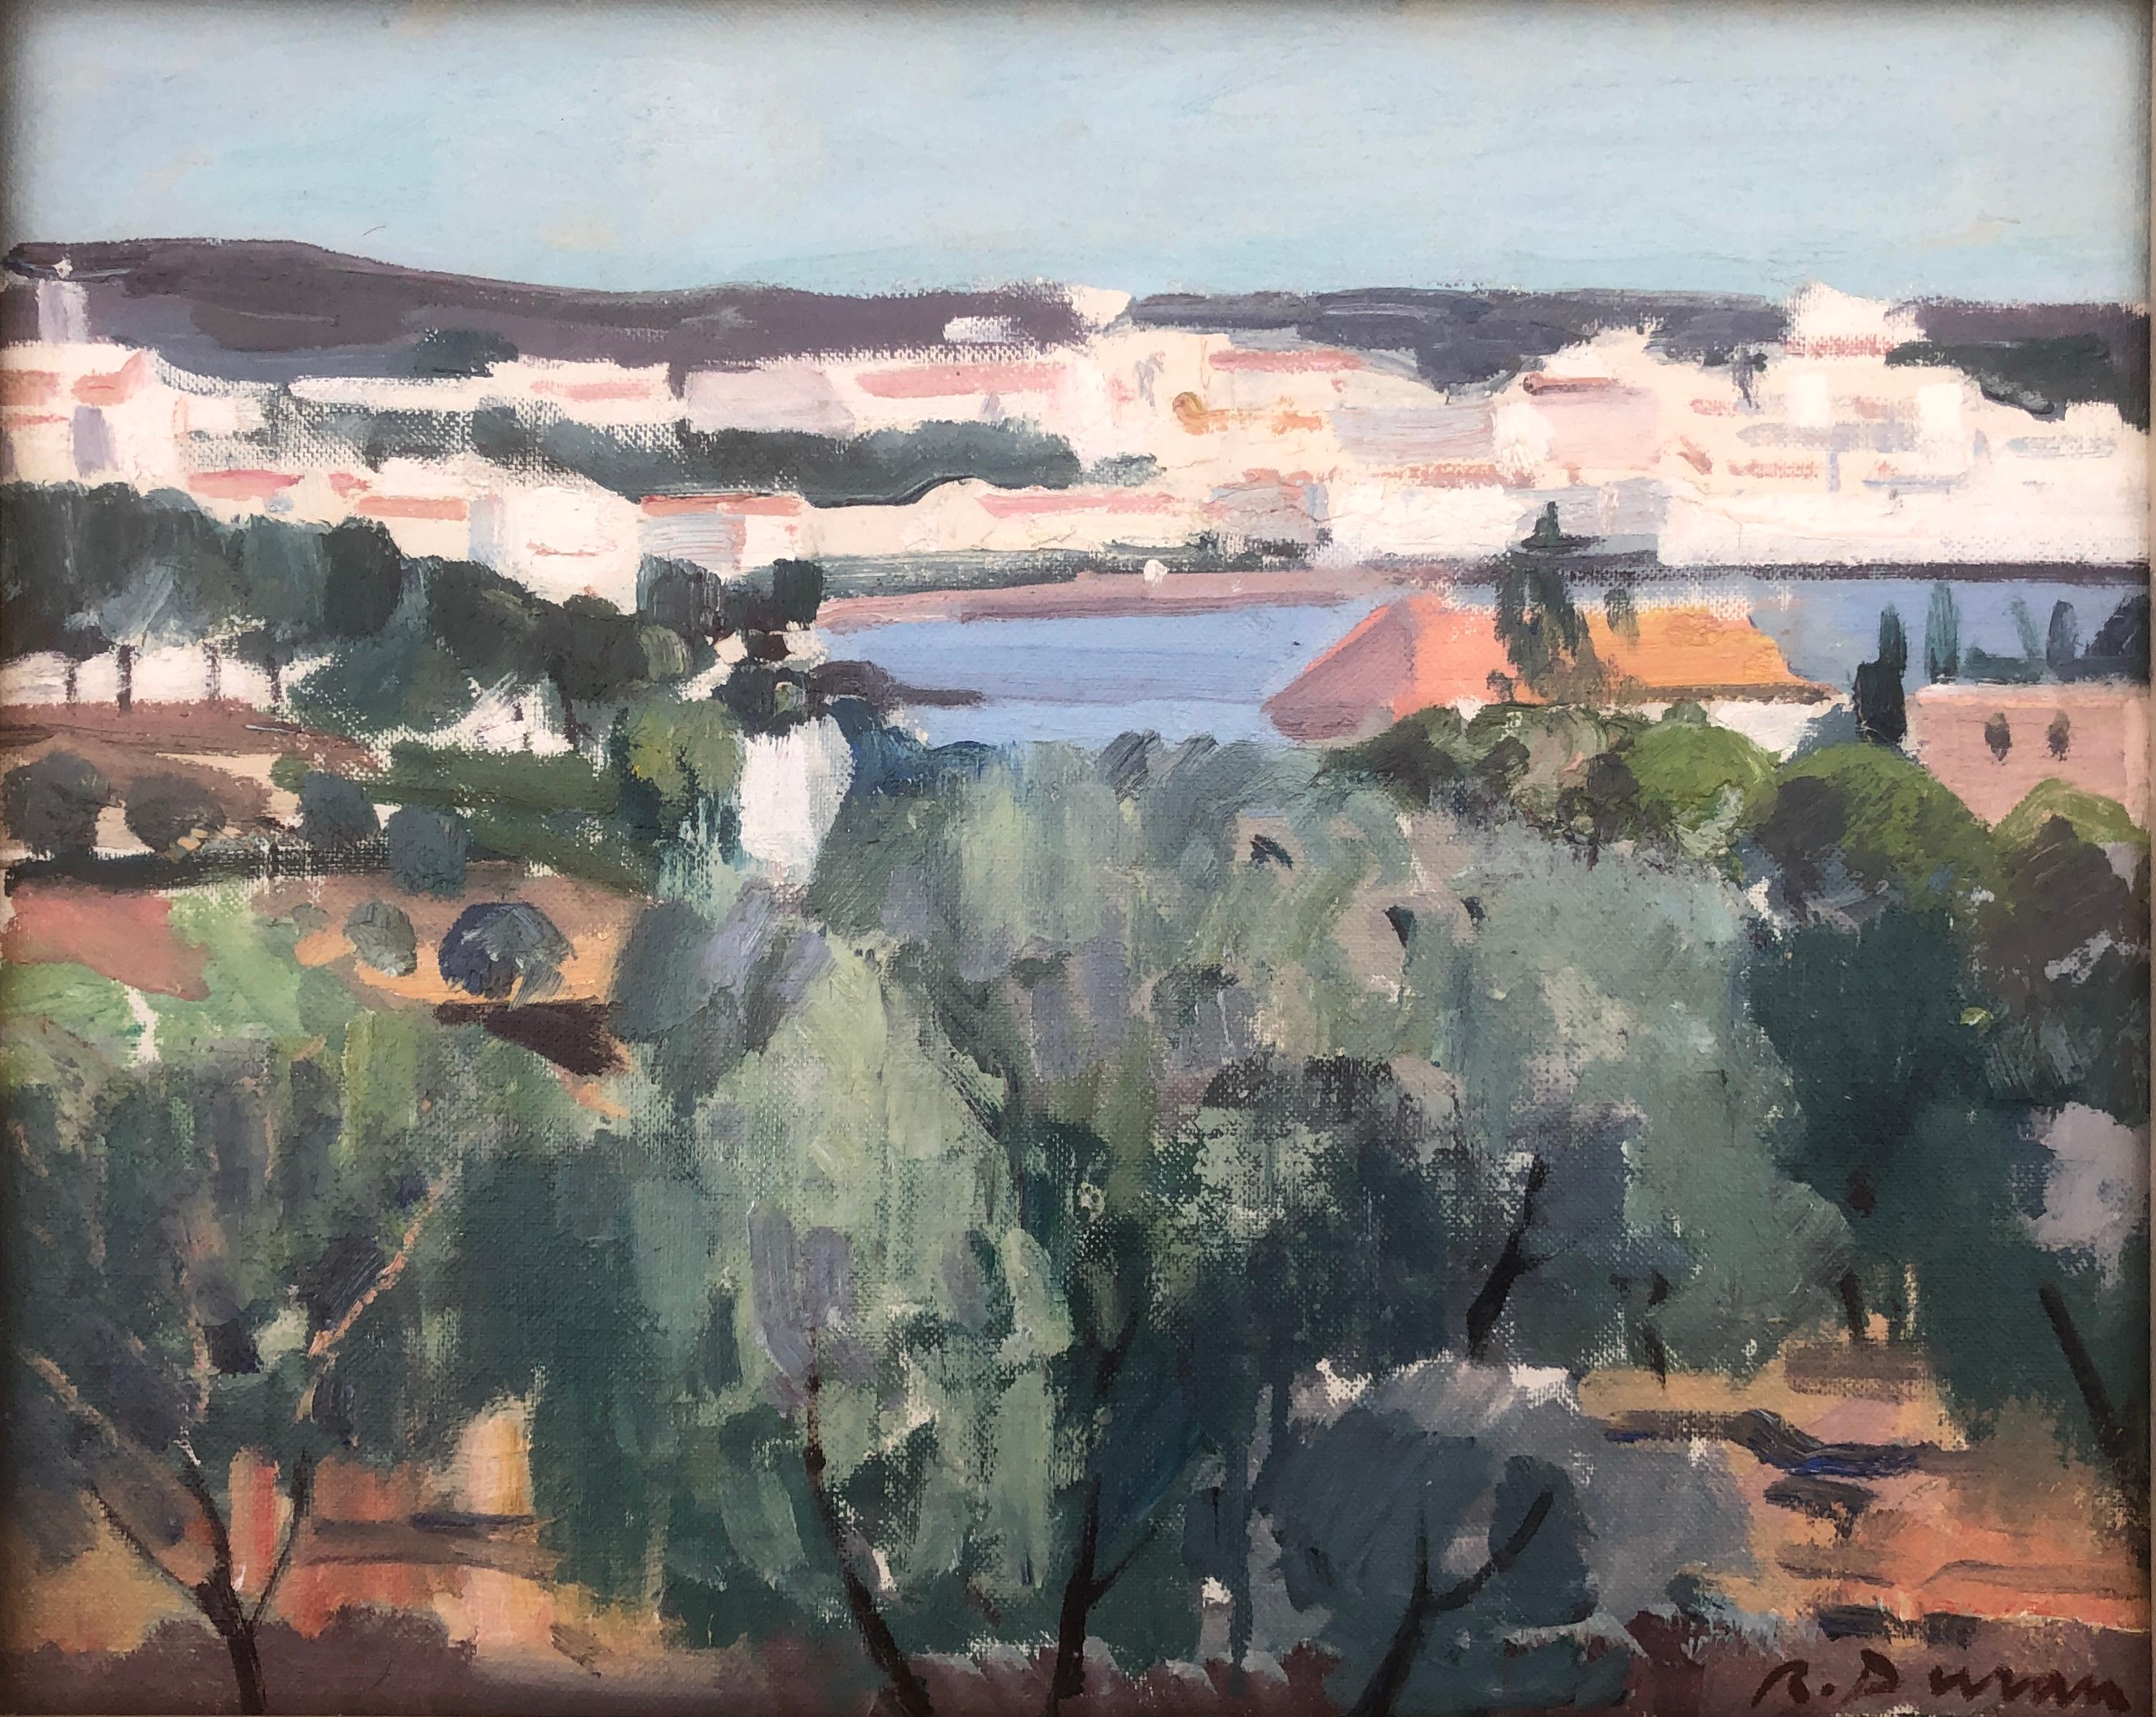 Rafael Duran Benet Landscape Painting – Spanien Cadaques, Ölgemälde, spanische mediterrane Meereslandschaft, Cadaques